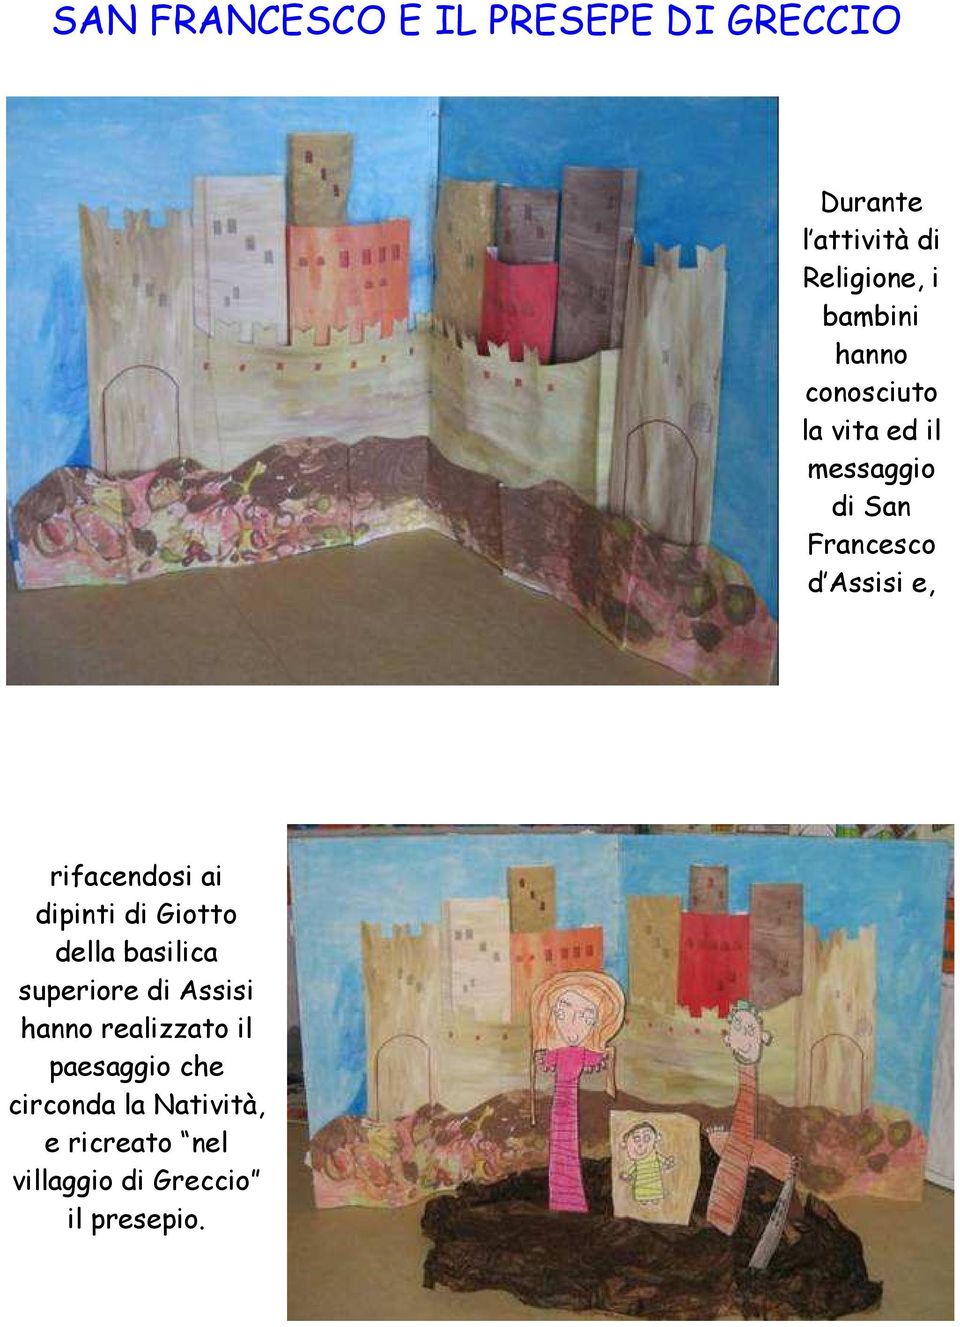 rifacendosi ai dipinti di Giotto della basilica superiore di Assisi hanno